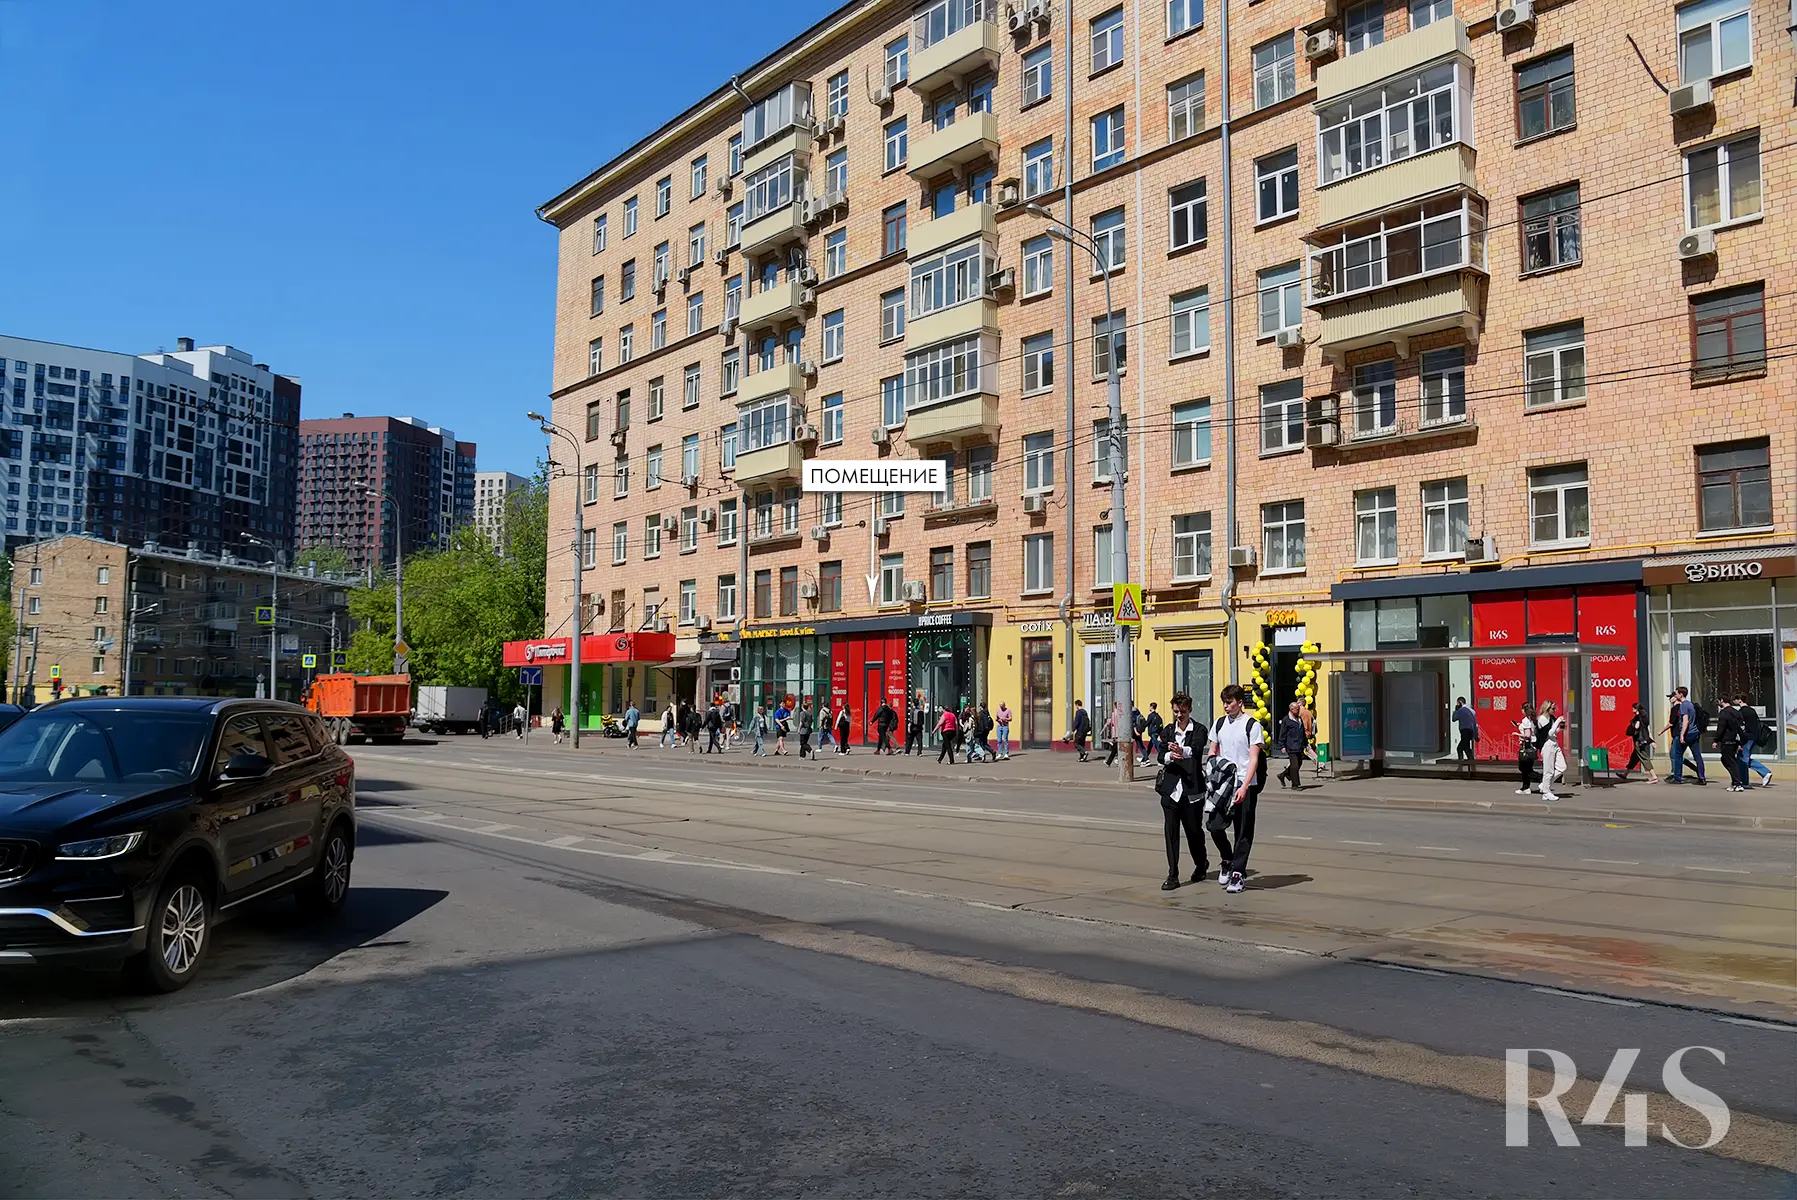 Продажа торгового помещения площадью 153.4 м2 в Москве: Красноказарменная, 23 R4S | Realty4Sale